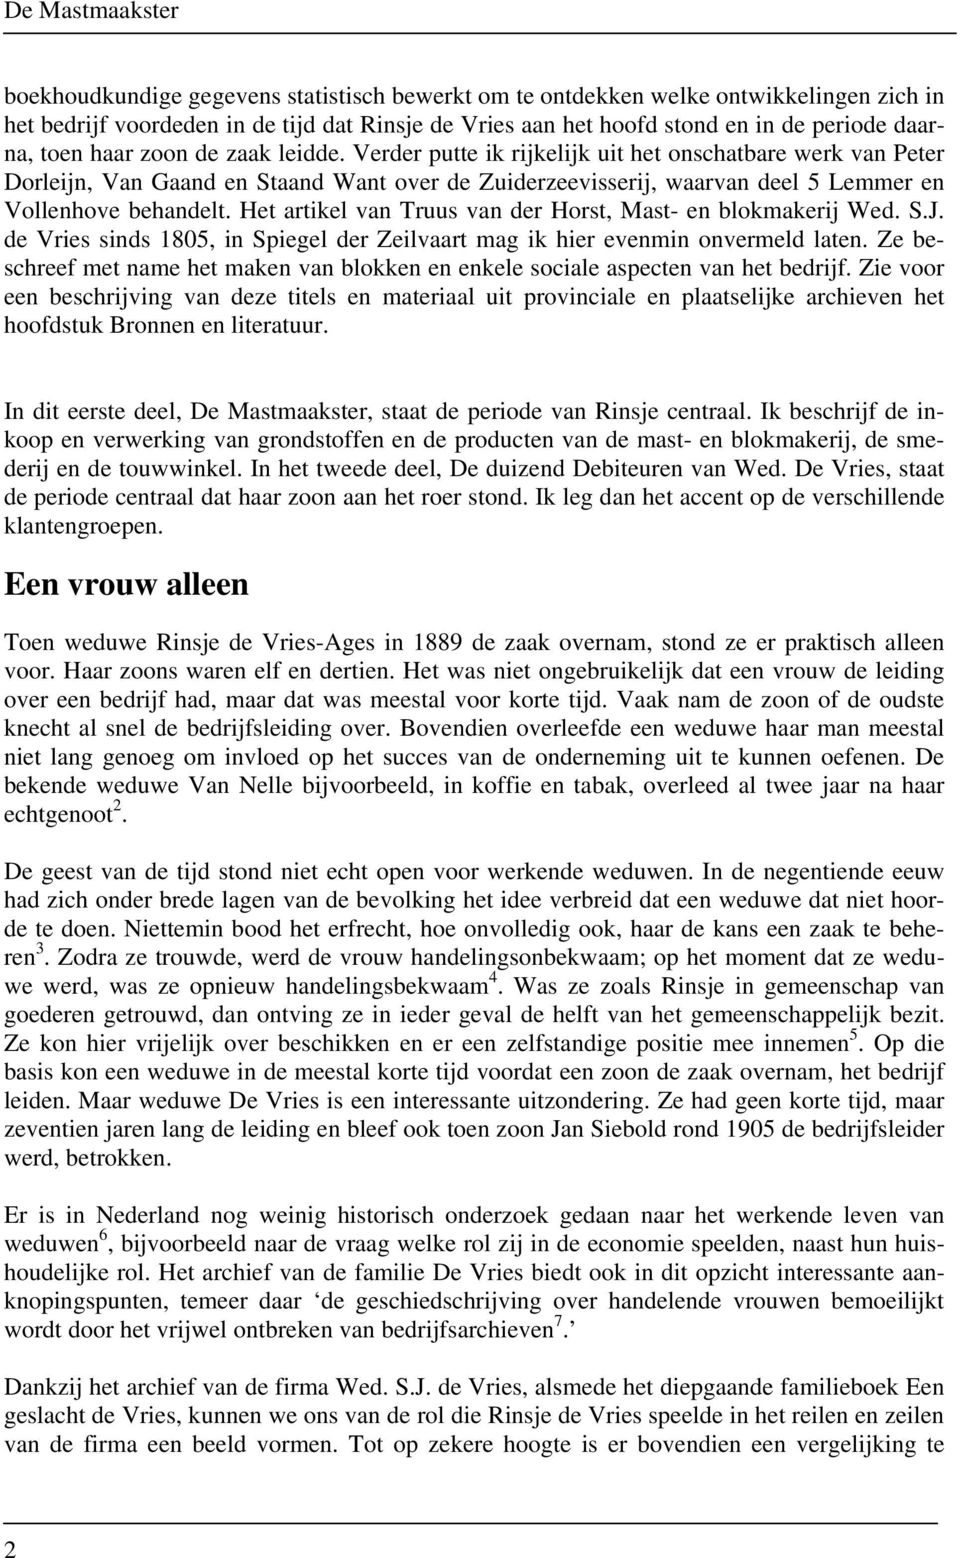 Het artikel van Truus van der Horst, Mast- en blokmakerij Wed. S.J. de Vries sinds 1805, in Spiegel der Zeilvaart mag ik hier evenmin onvermeld laten.